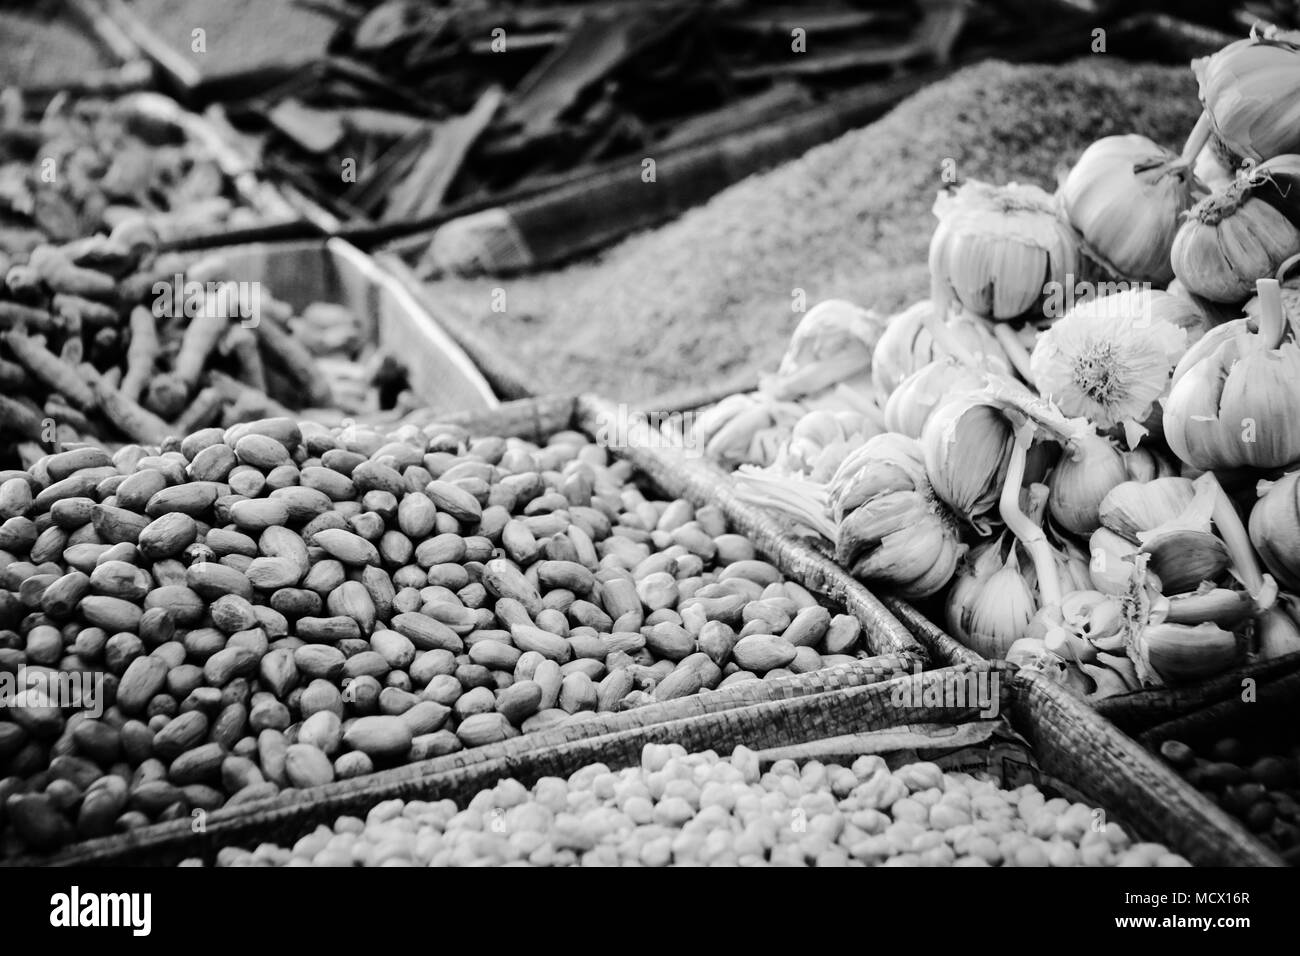 Immagine in bianco e nero di verdure, erbe e i dadi sul vecchio souk di Casablanca, Marocco Foto Stock